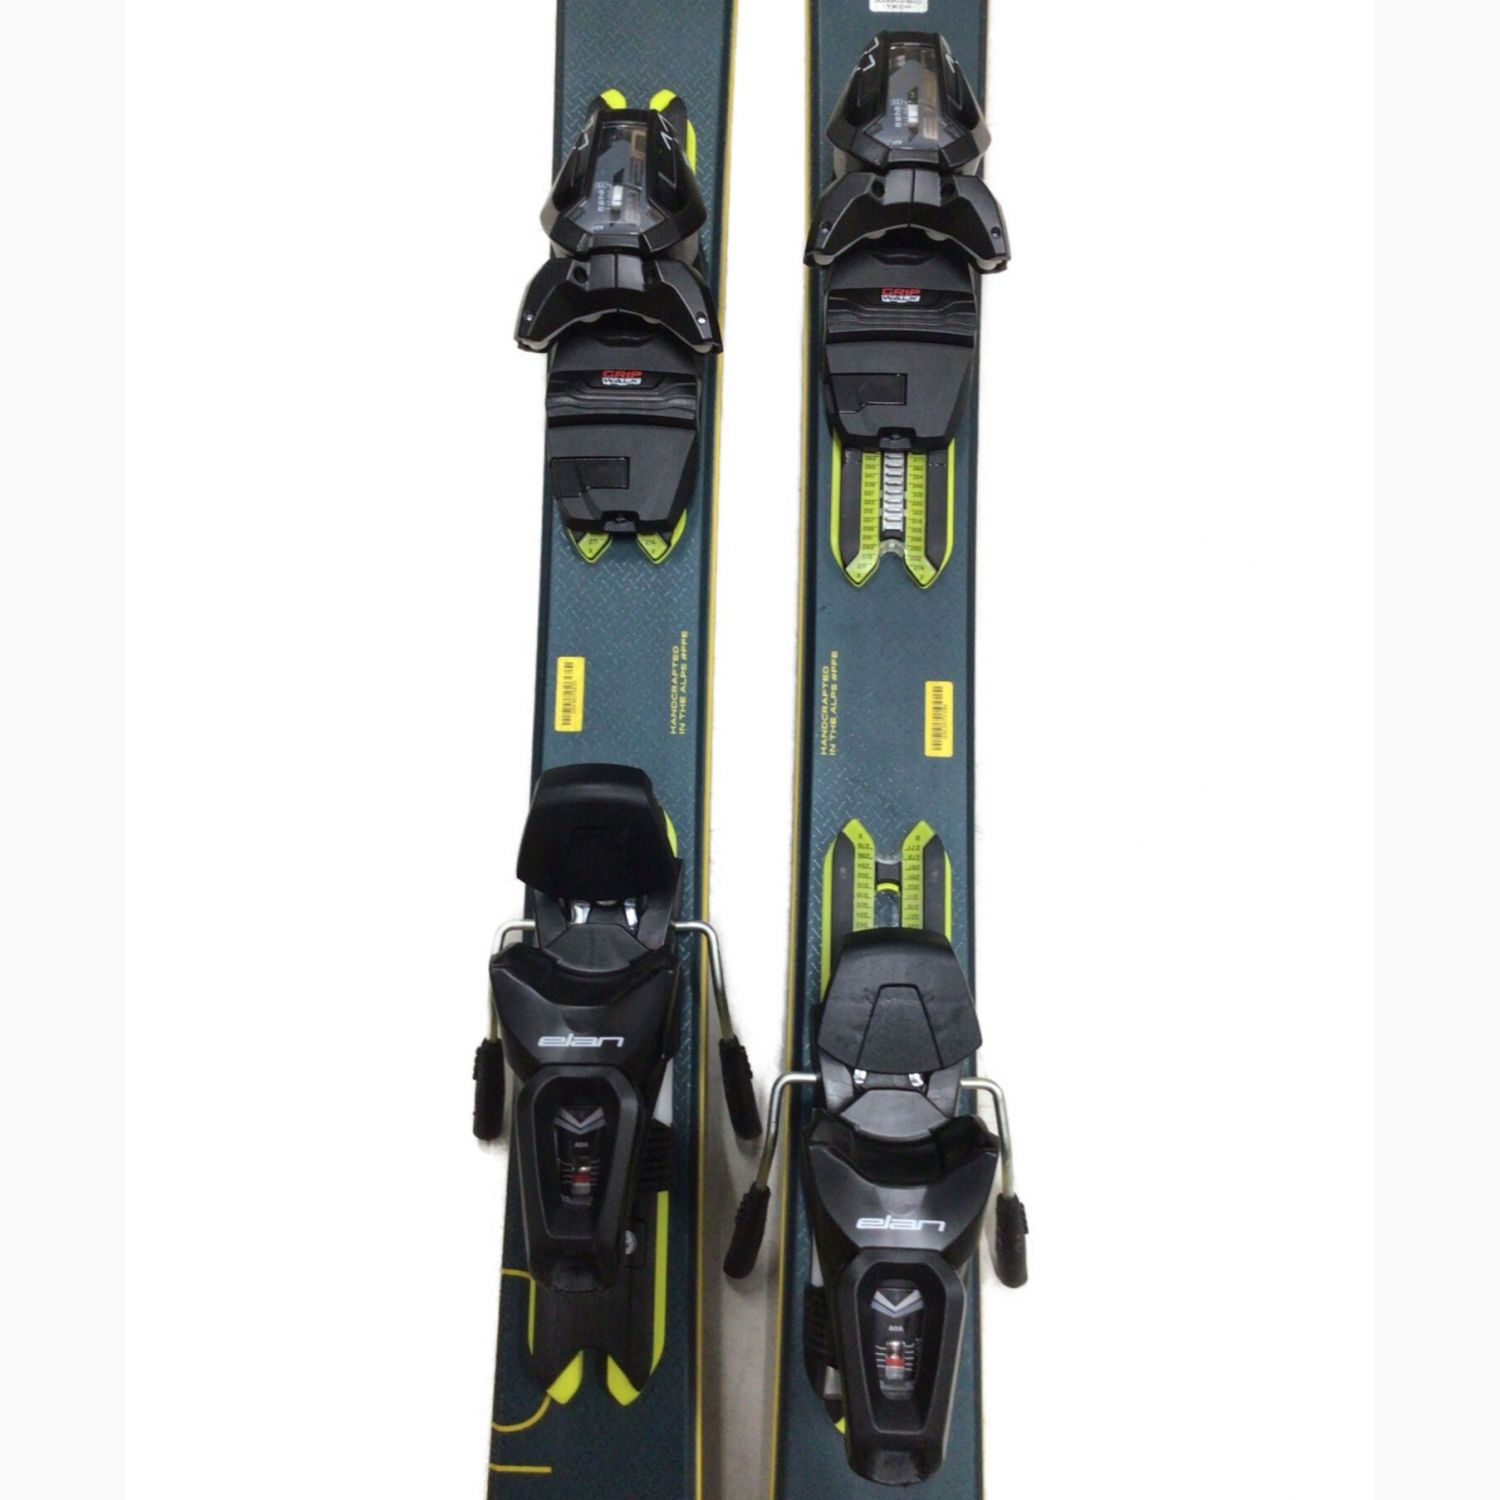 返品送料無料】 ELAN エラン Amphibio 10 スキー板 160cm ソール幅調整